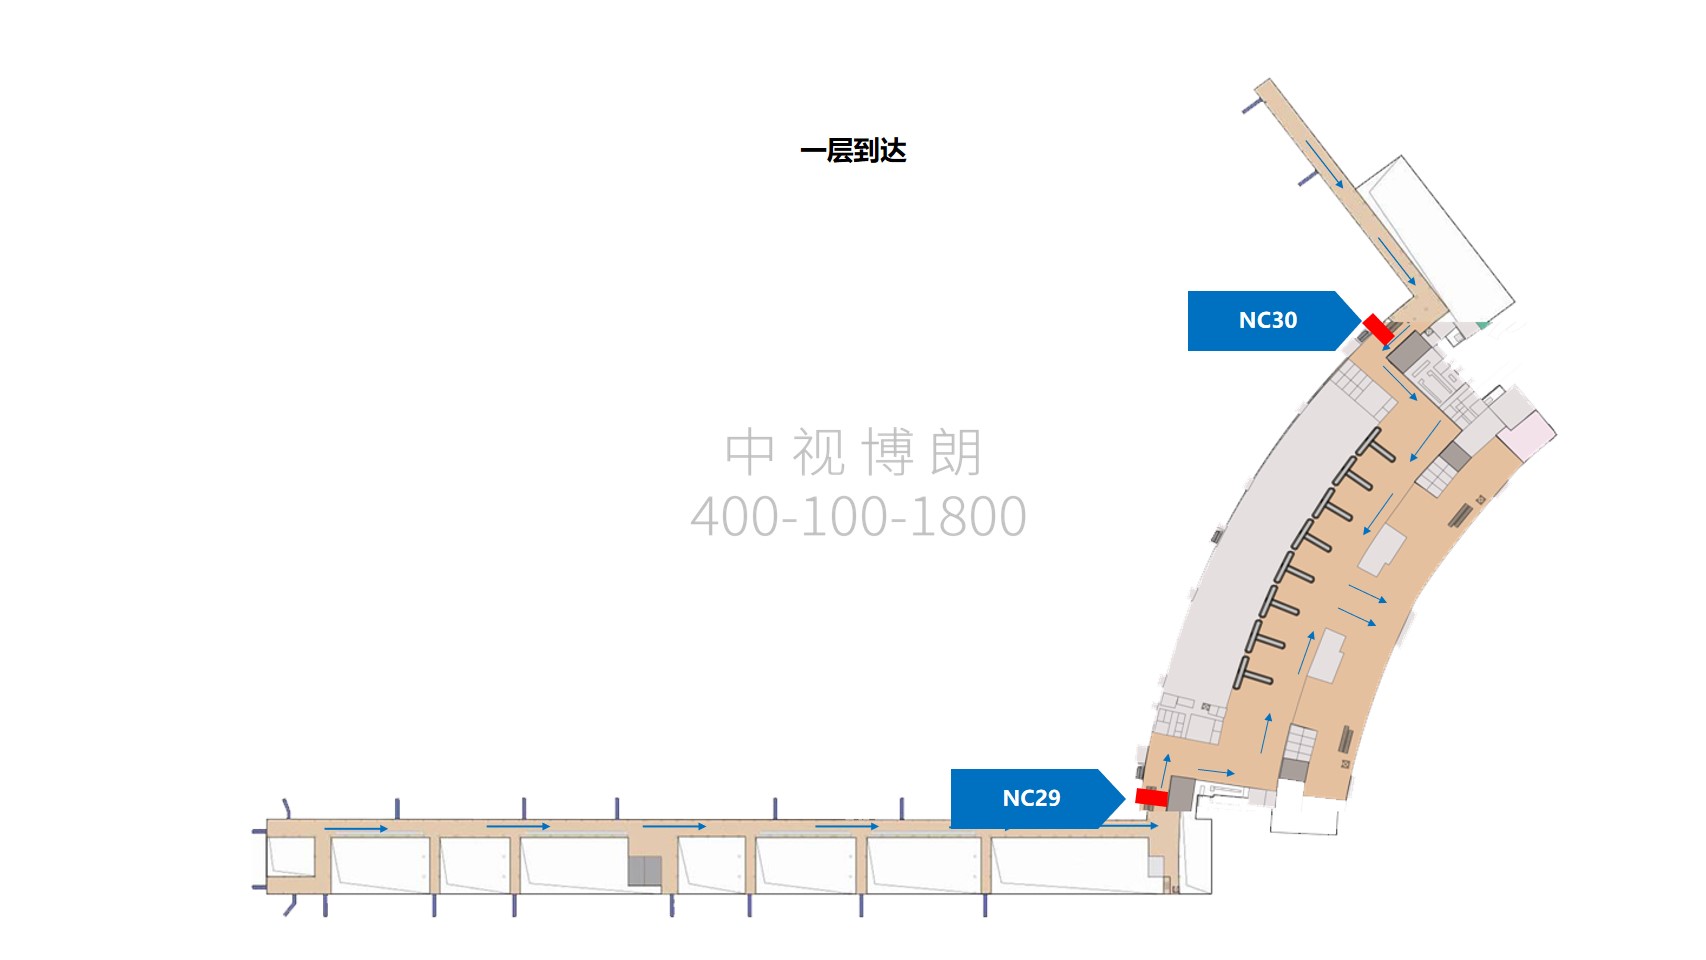 南昌机场广告-到达通廊灯箱套装NC29/30点位图